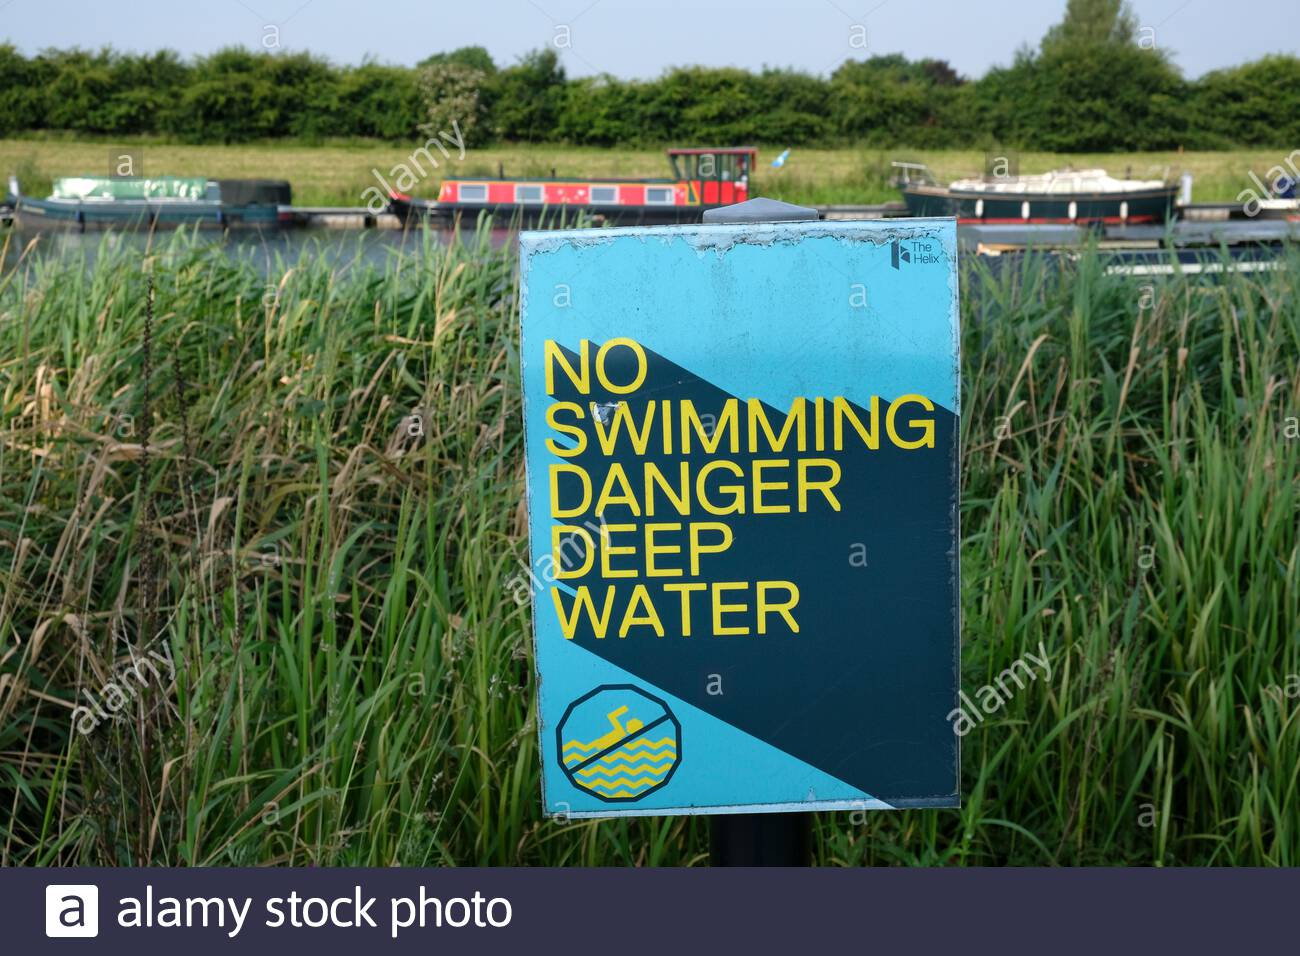 No hay peligro de nadar señal de advertencia de aguas profundas Foto de stock